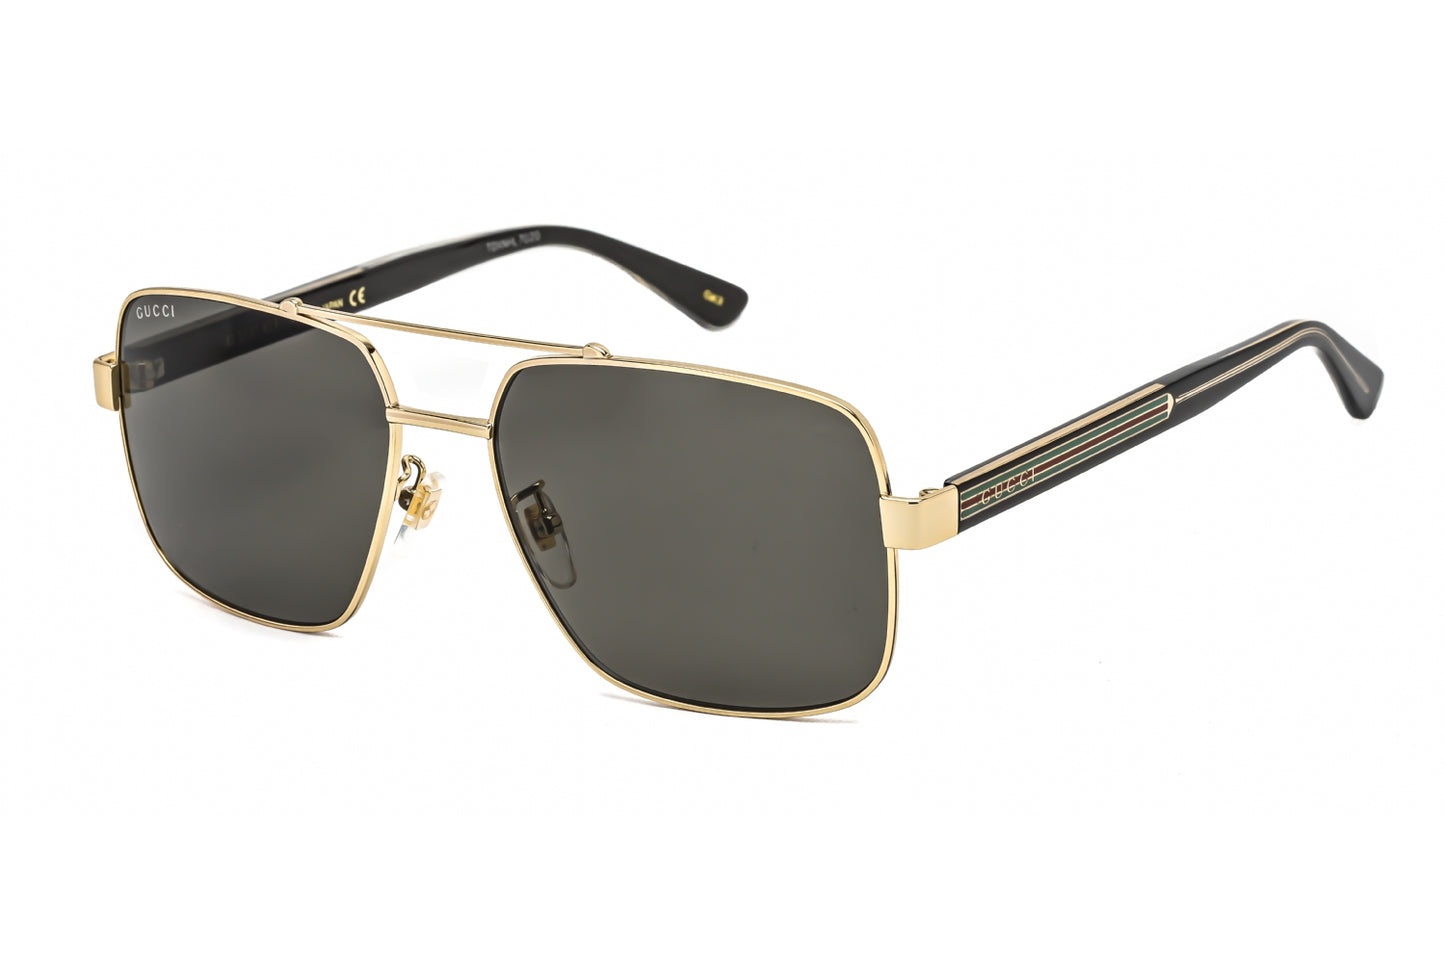 Gucci GG0529S-001 60mm New Sunglasses